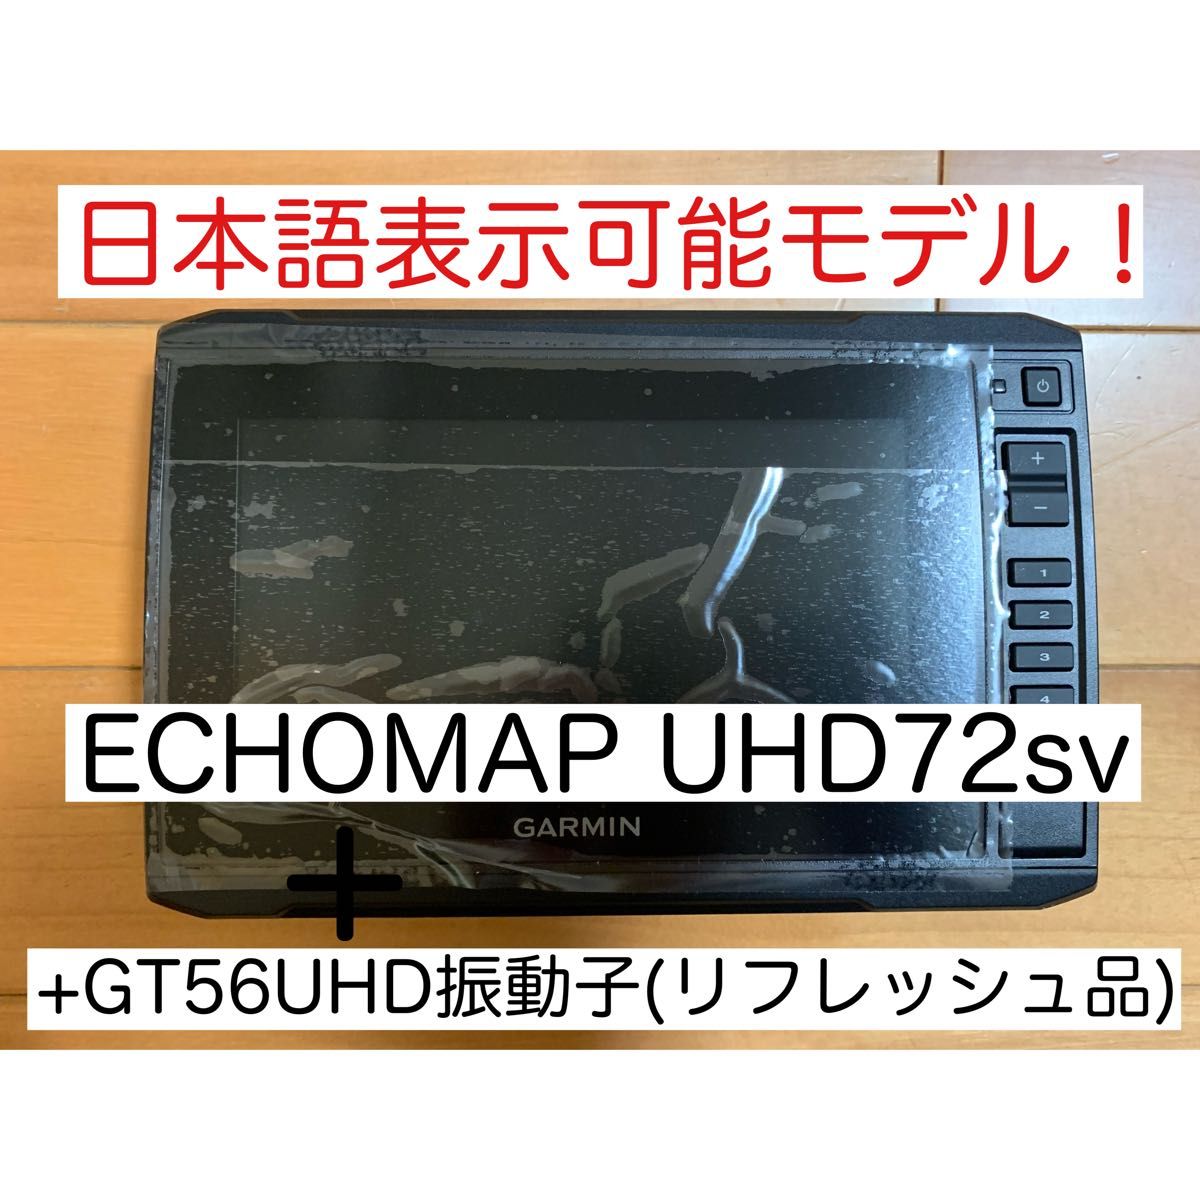 リフレッシュ品 エコマップUHD7インチ+GT56UHD振動子 日本語表示可能！